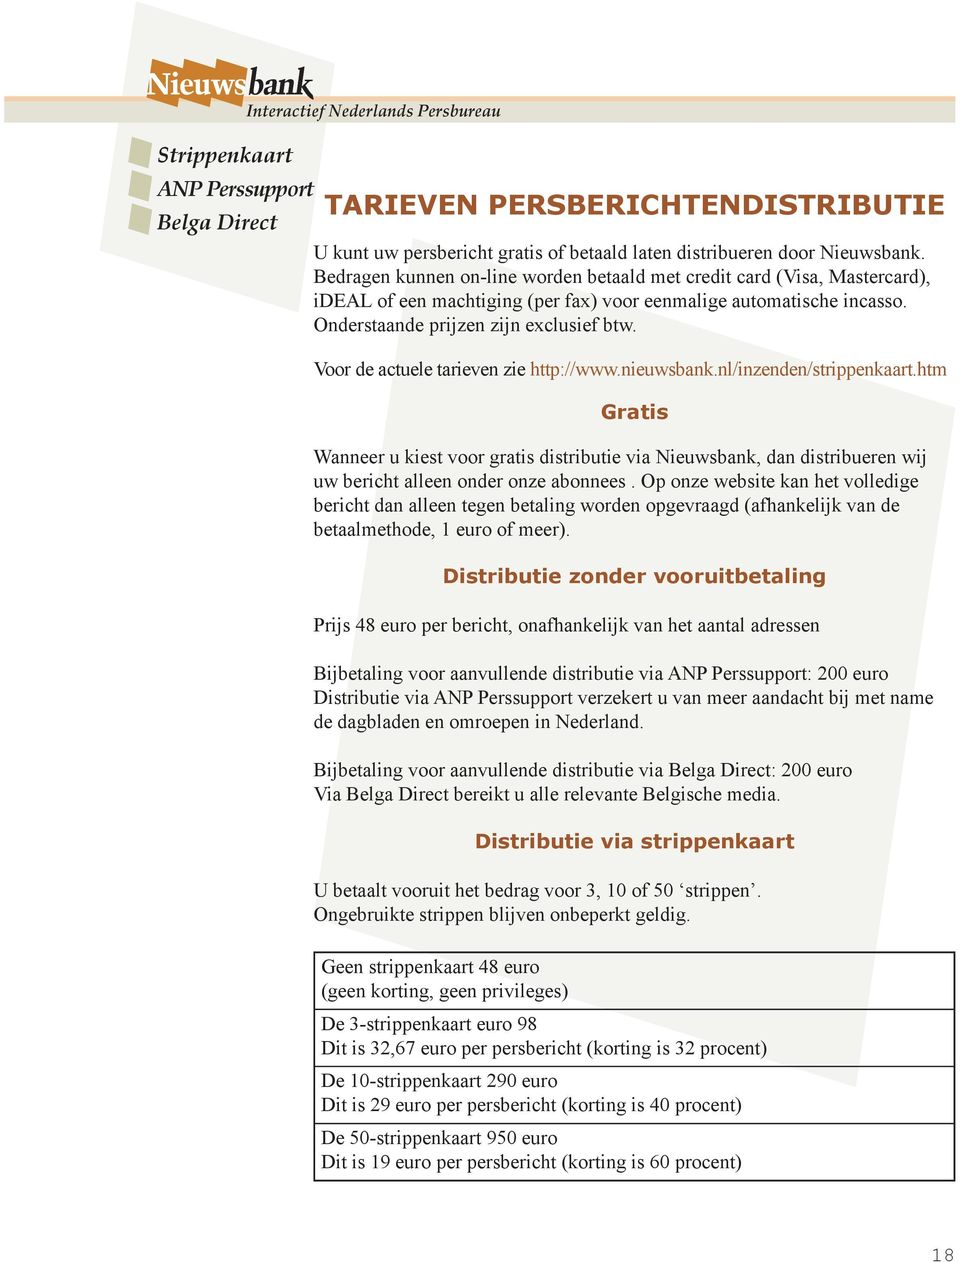 Voor de actuele tarieven zie http://www.nieuwsbank.nl/inzenden/strippenkaart.